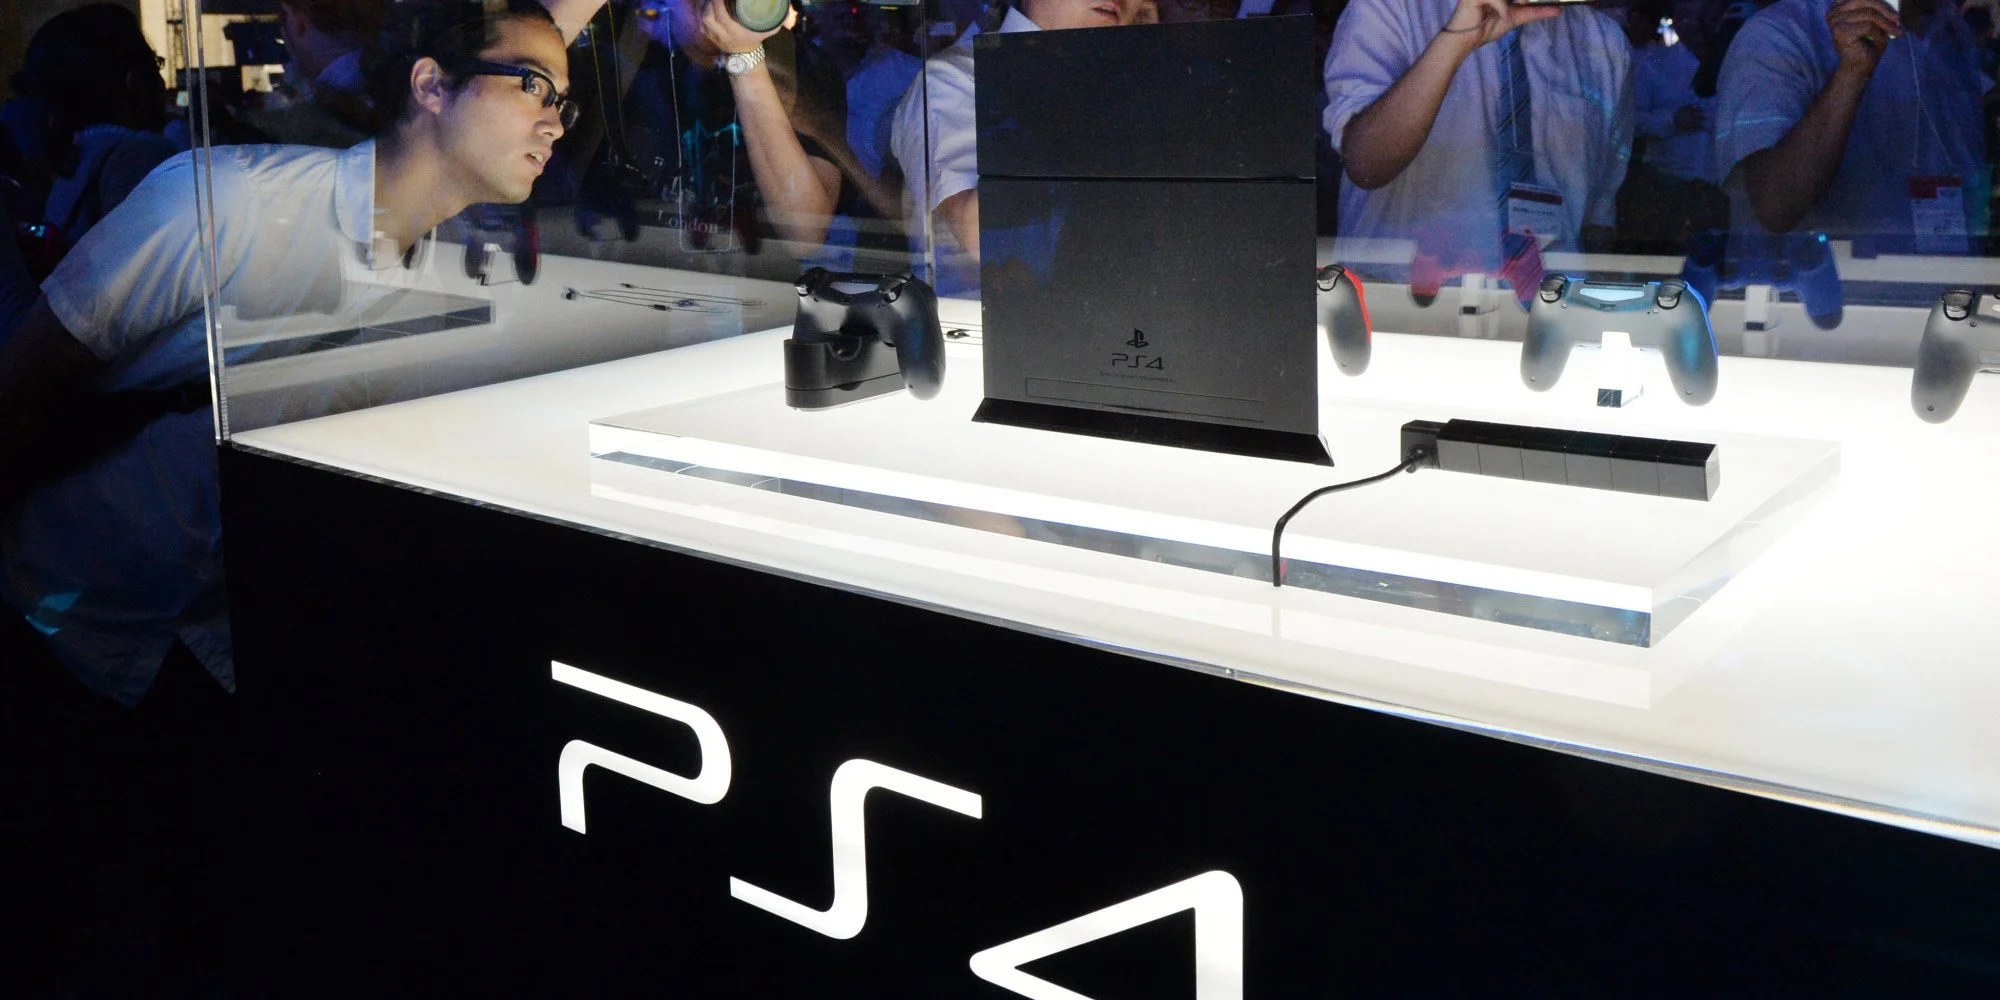 Китайский опыт: геоблокировка на PlayStation 4 и Xbox One - фото 3